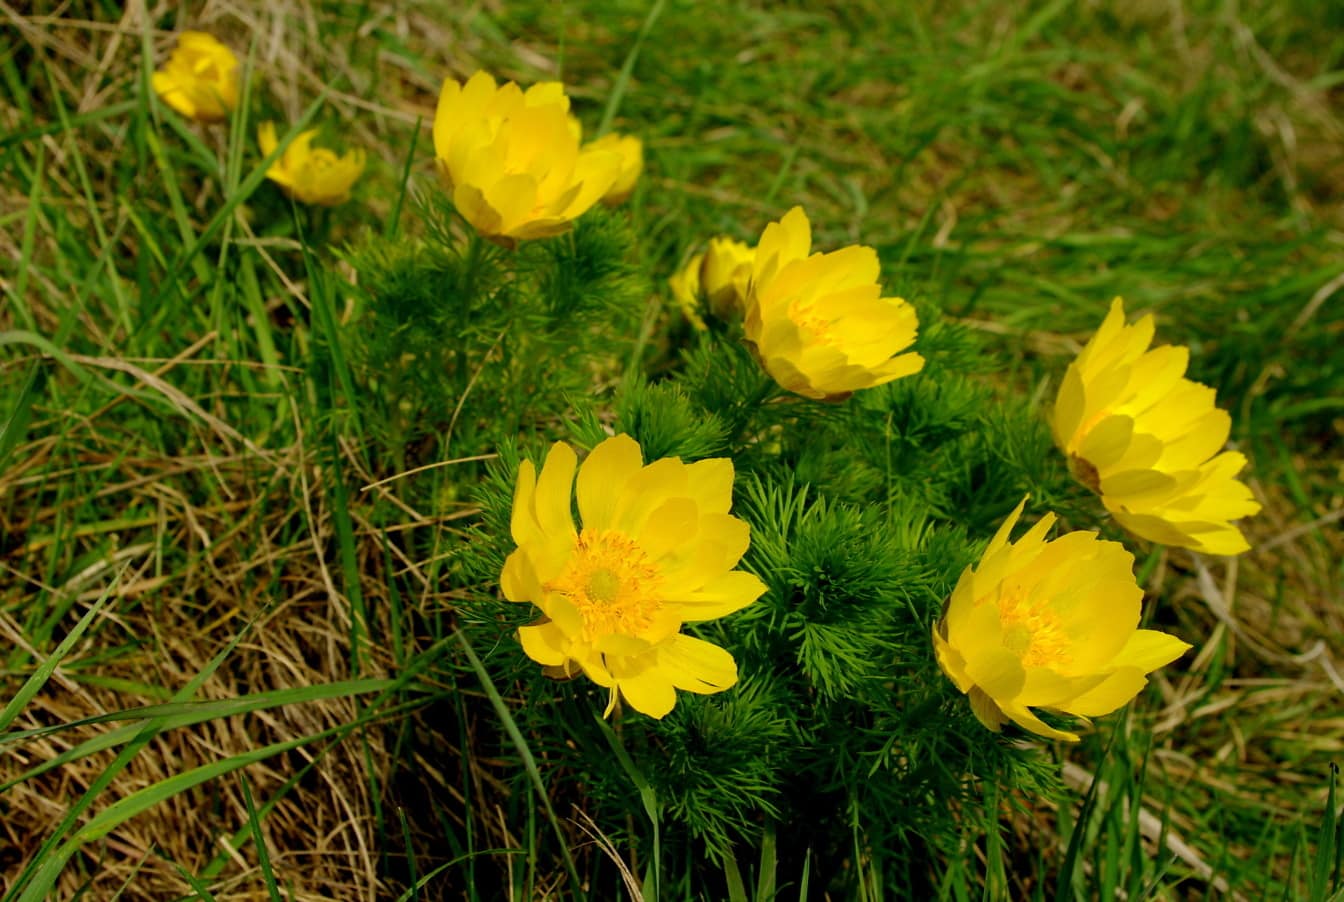 野鸡眼睛的淡黄色花瓣 (Adonis vernalis) 草本植物中的野花